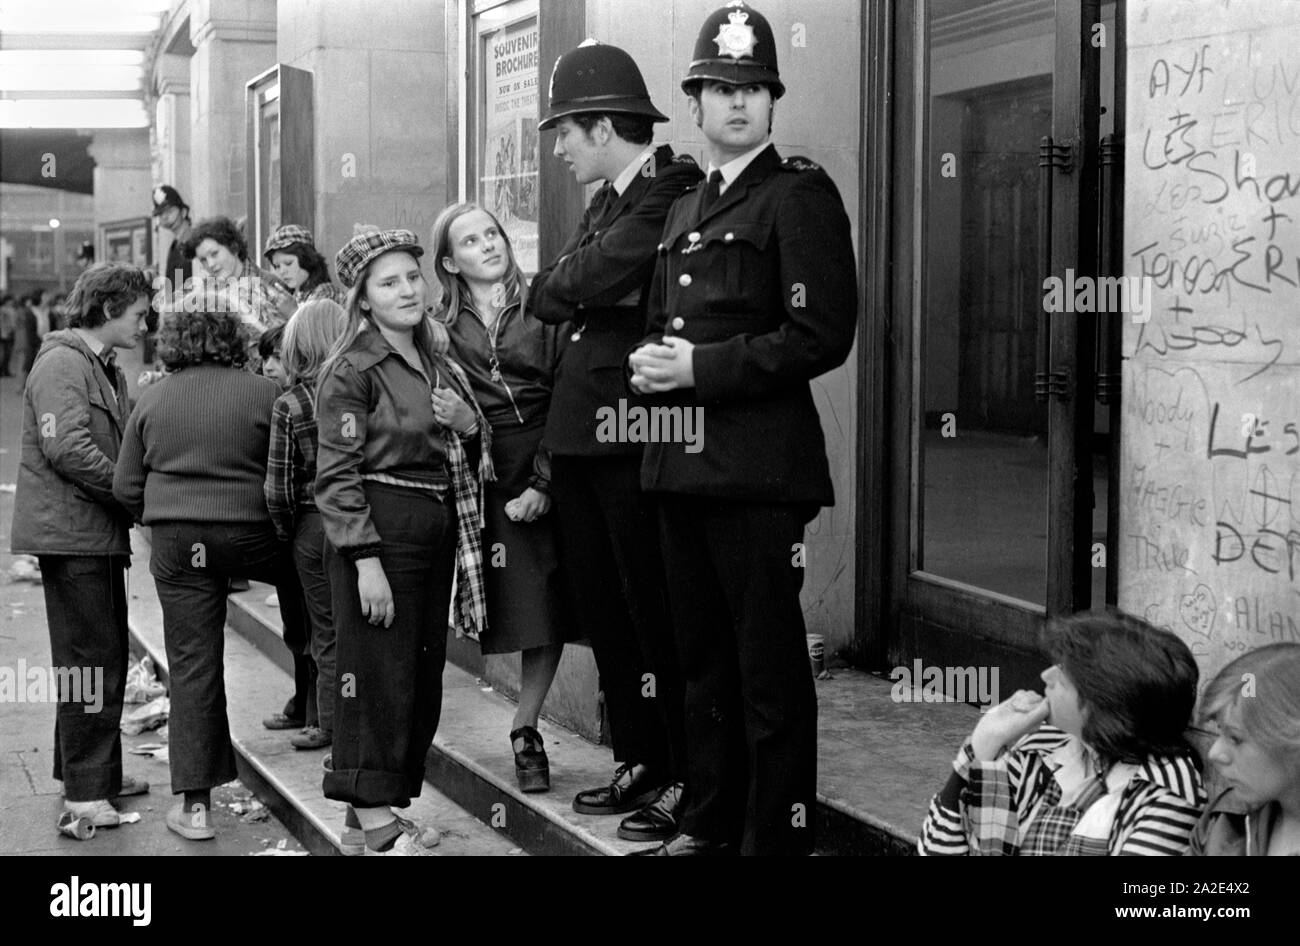 Années 1970 Grande-Bretagne adolescente Bay City Roller fans. Le groupe de garçons POP quitte un concert de pop à Hammersmith Odeon, West London 1975. Les filles portent le tartan de Bay City Roller, discutant avec des policiers qui sont là pour garder l'ordre! HOMER SYKES des années 70 Banque D'Images